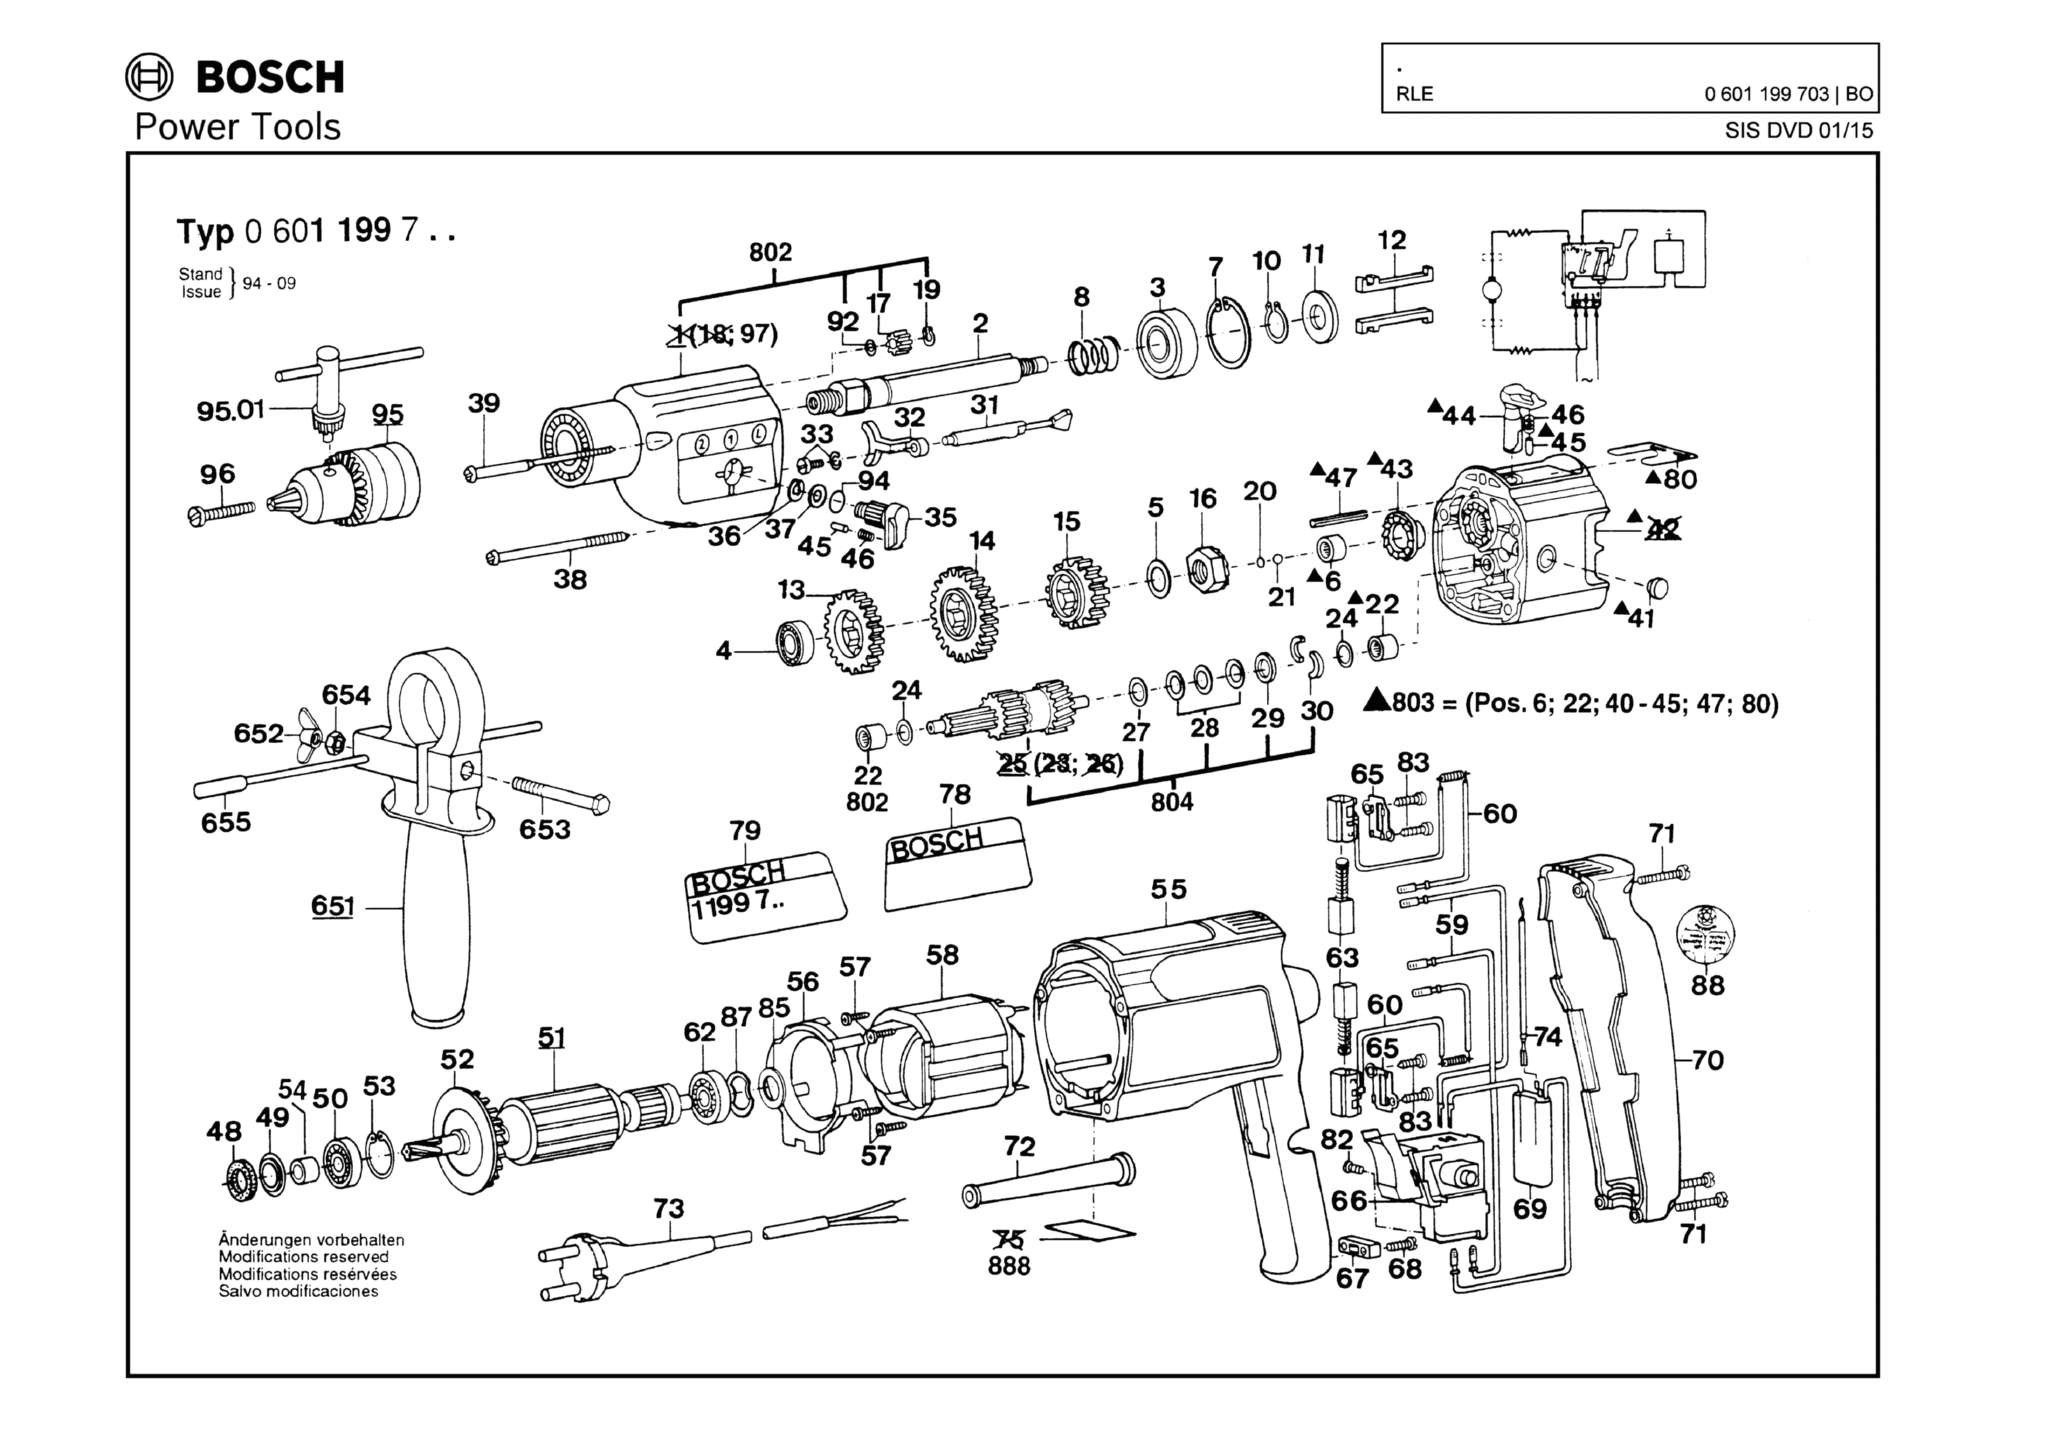 Запчасти, схема и деталировка Bosch (ТИП 0601199703)